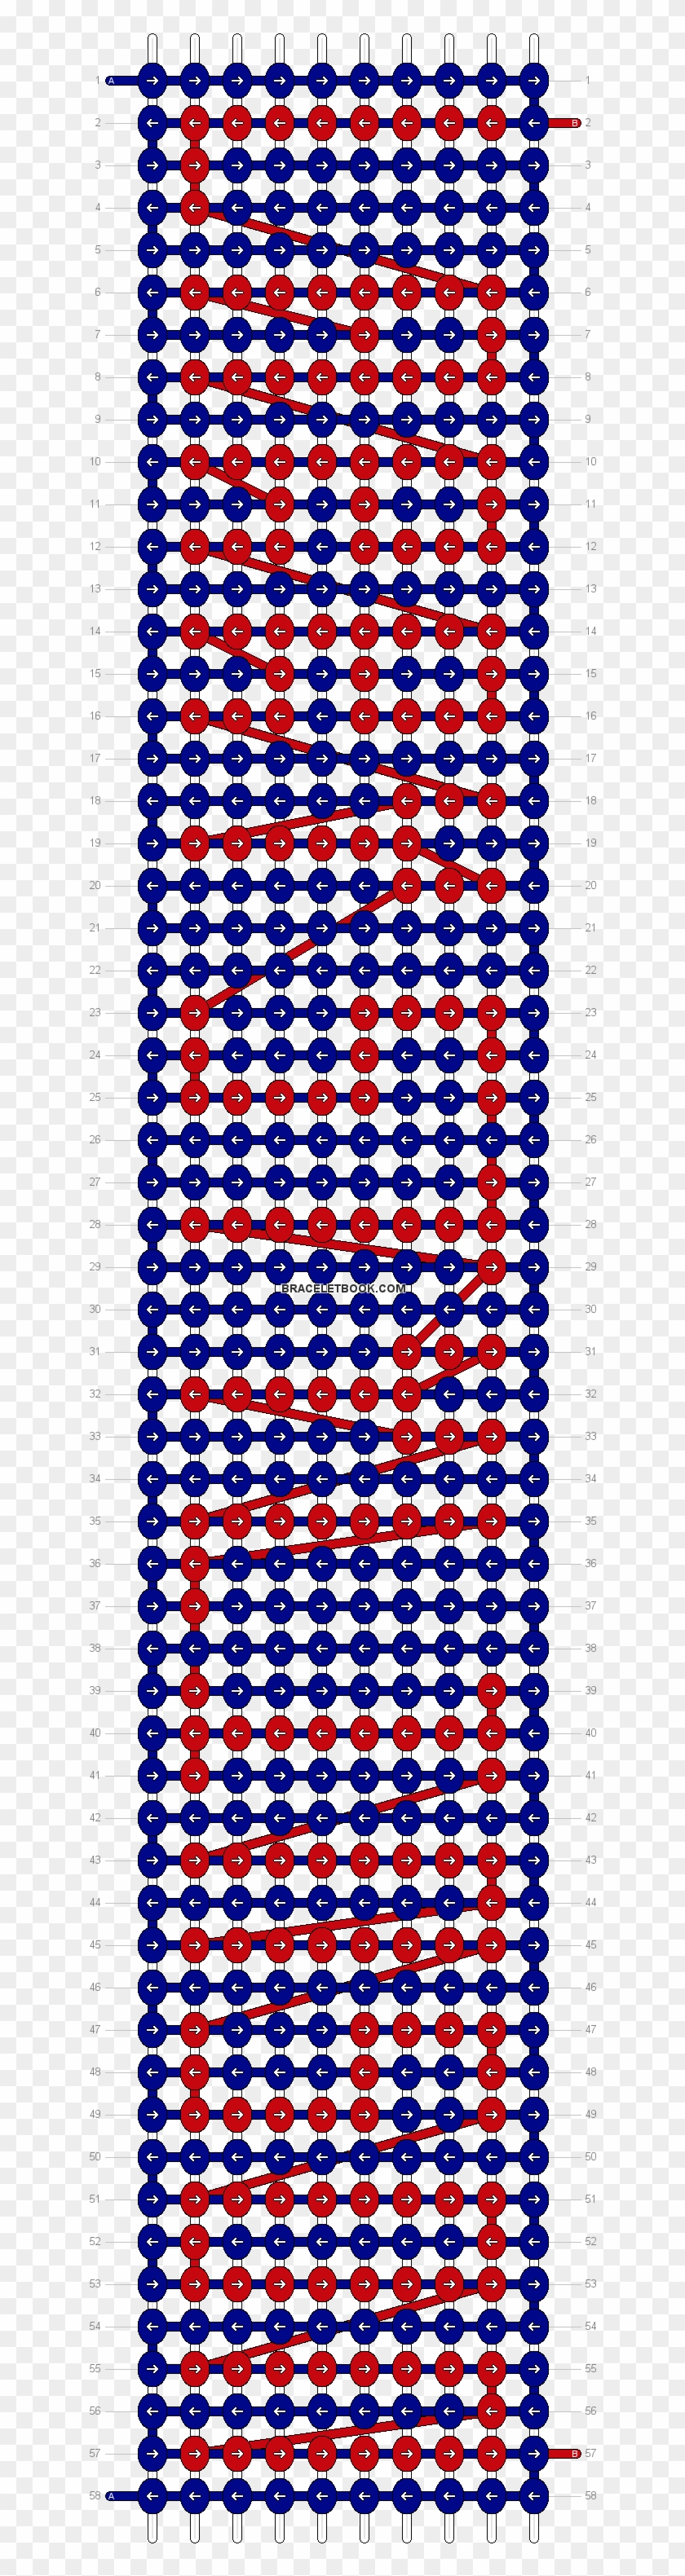 Alpha Pattern - Stitch Friendship Bracelet Pattern Clipart #5084748